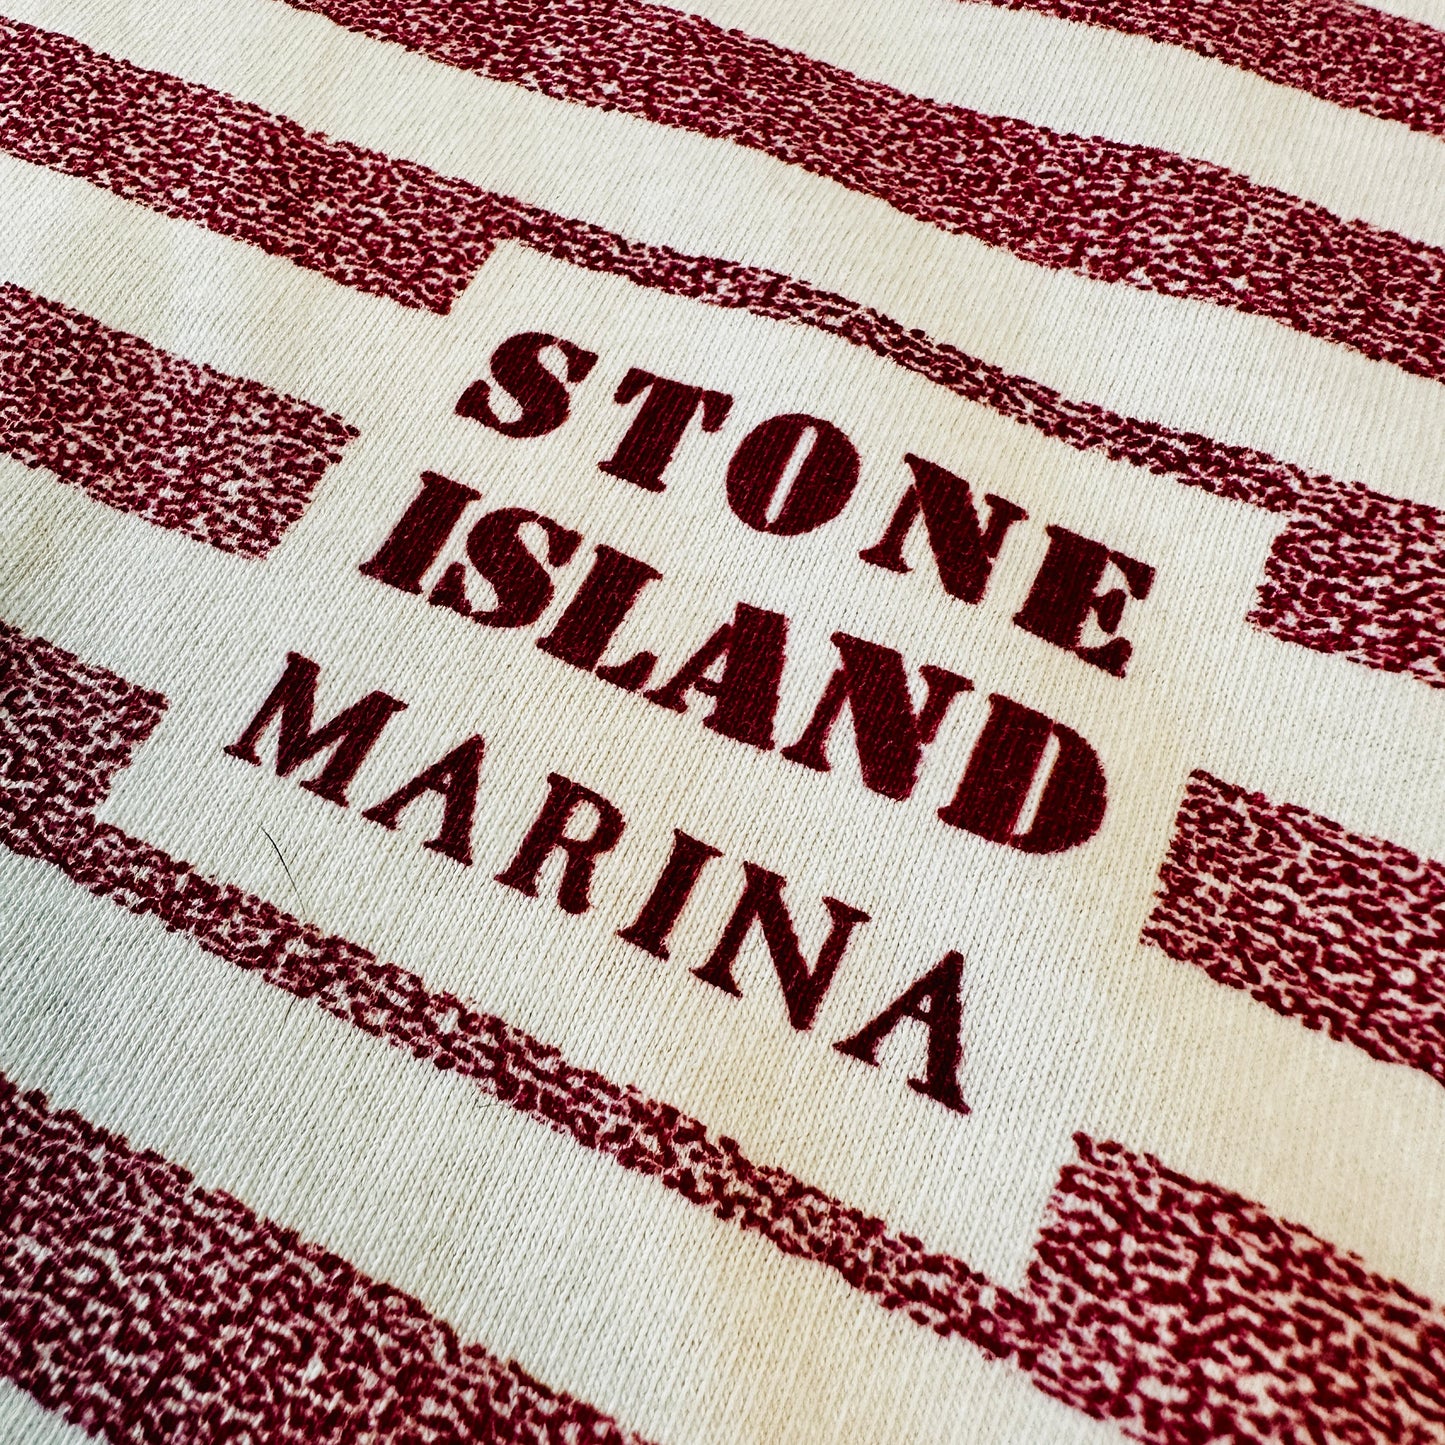 Stone Island Marina Box Logo -Vintage 1991 T-Shirt - XXL - Made in Italy